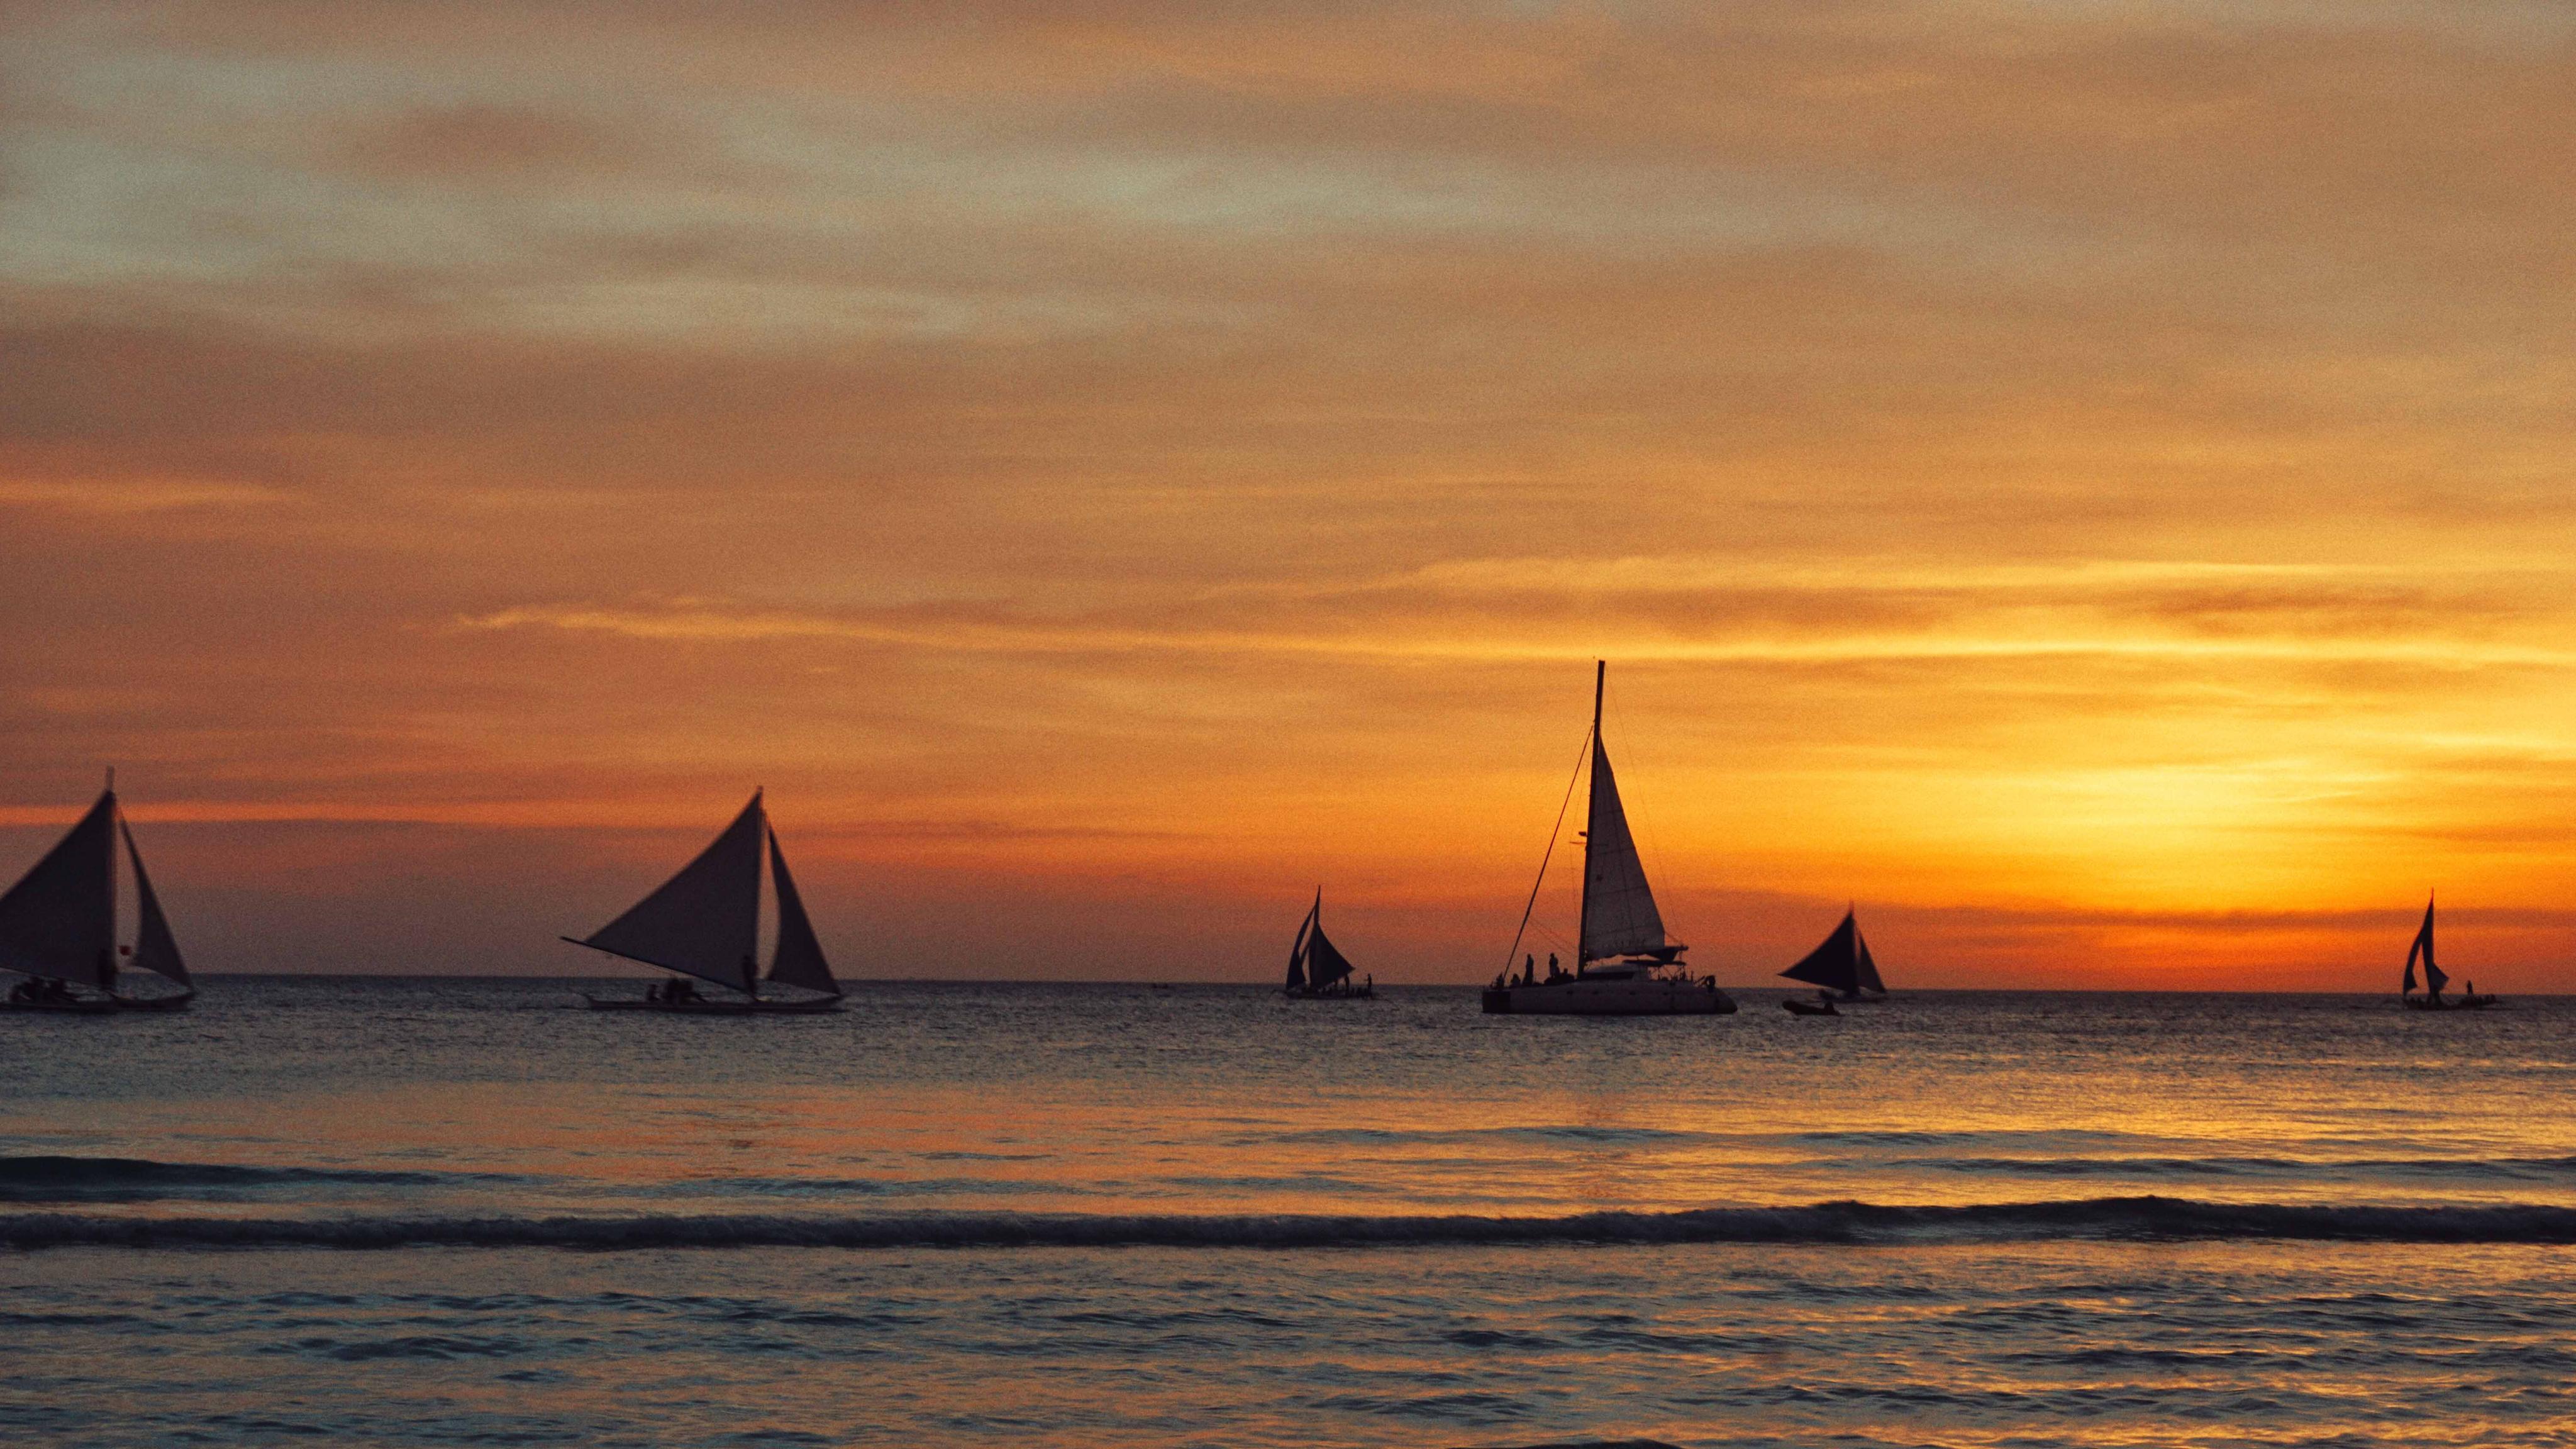 2023长滩岛落日风帆体验玩乐攻略,当风帆随风迎着落日驶向大海...【去哪儿攻略】